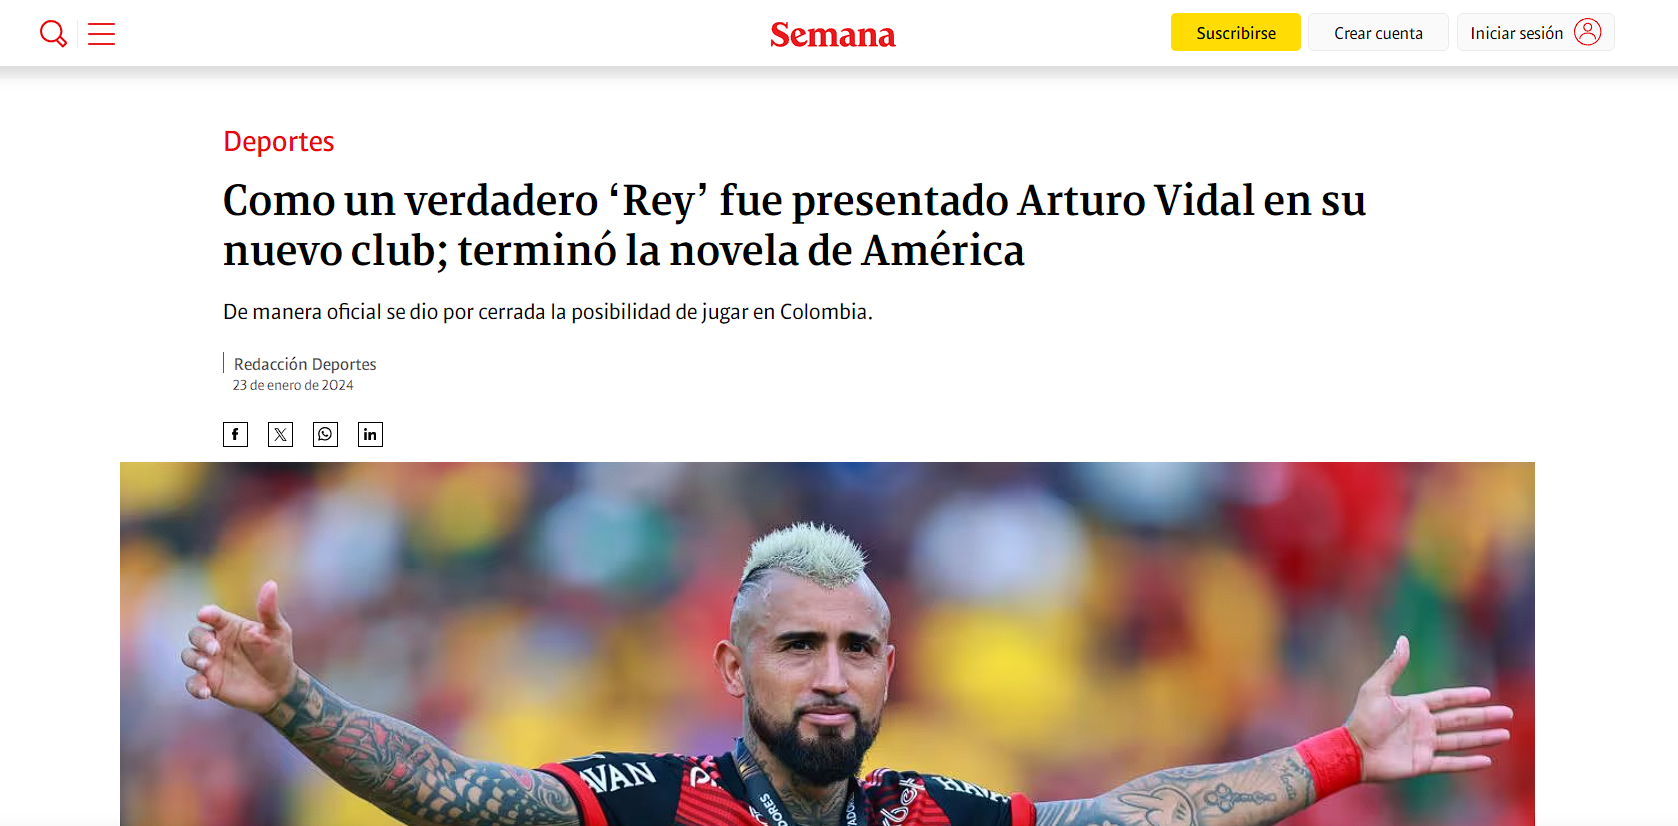 Noticia de Arturo Vidal en Semana